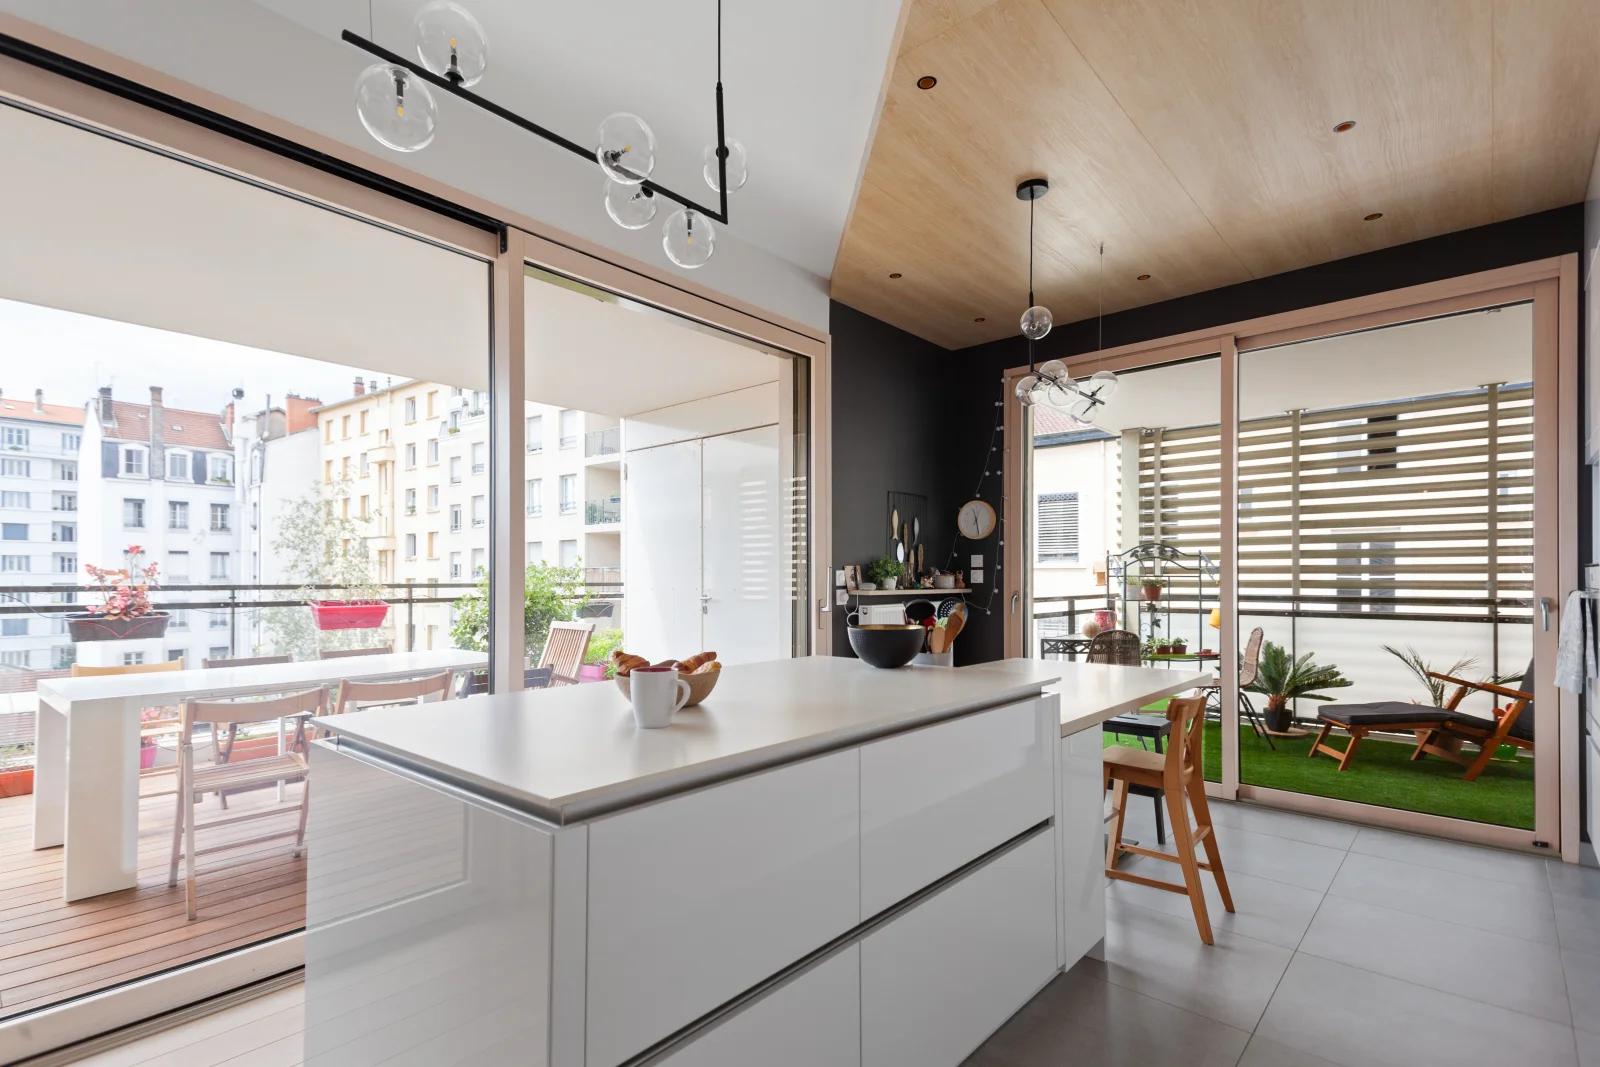 Kitchen in Appart. design bay window video-proj terrace - 5